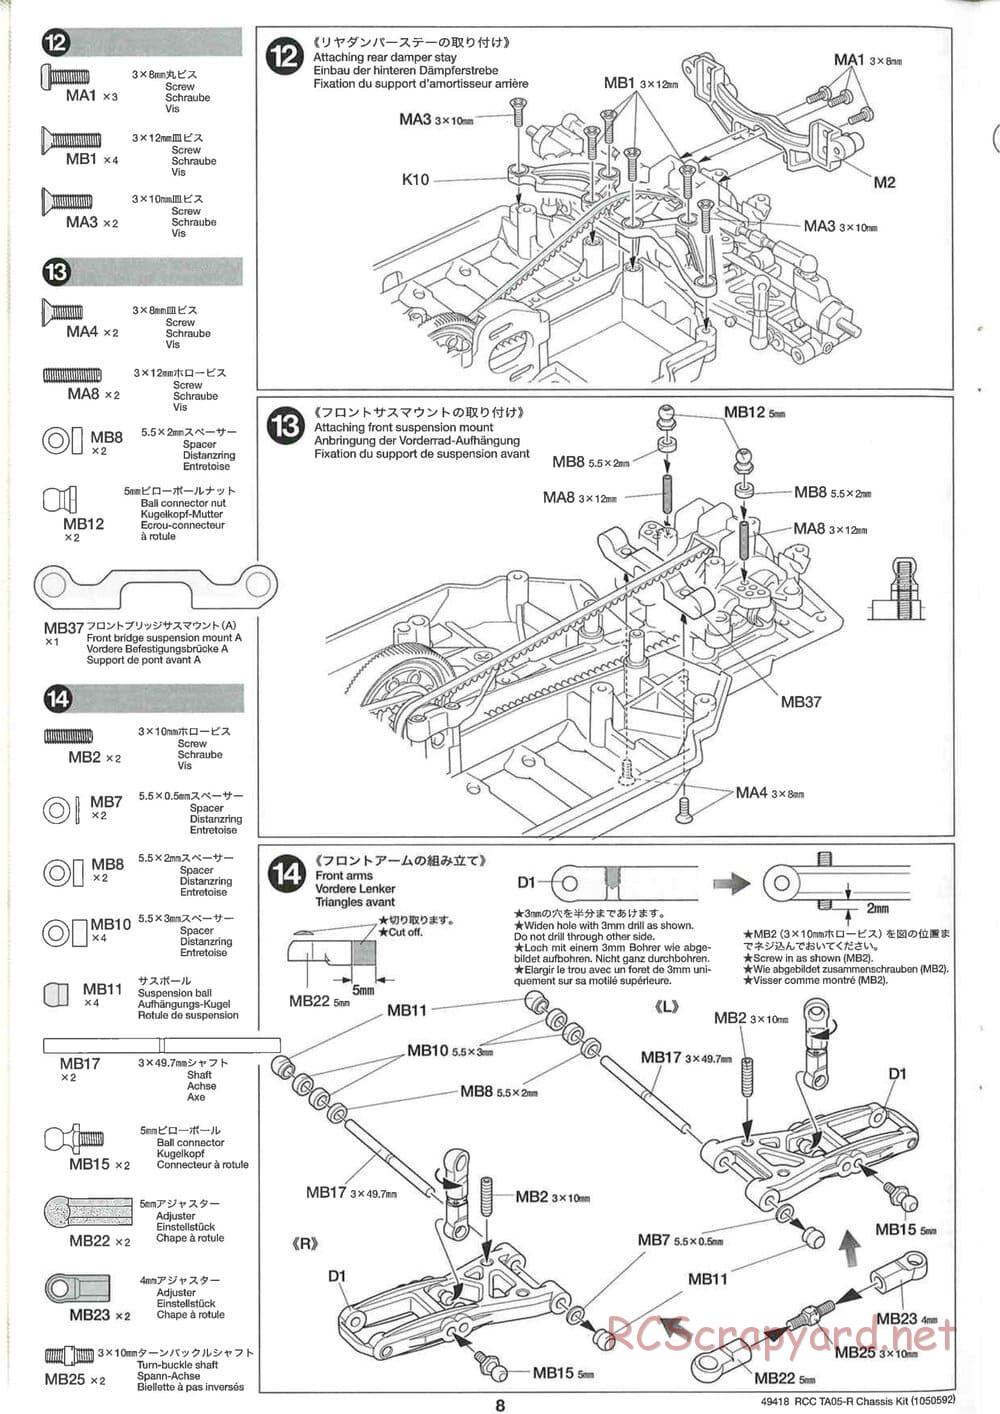 Tamiya - TA05-R Chassis - Manual - Page 8